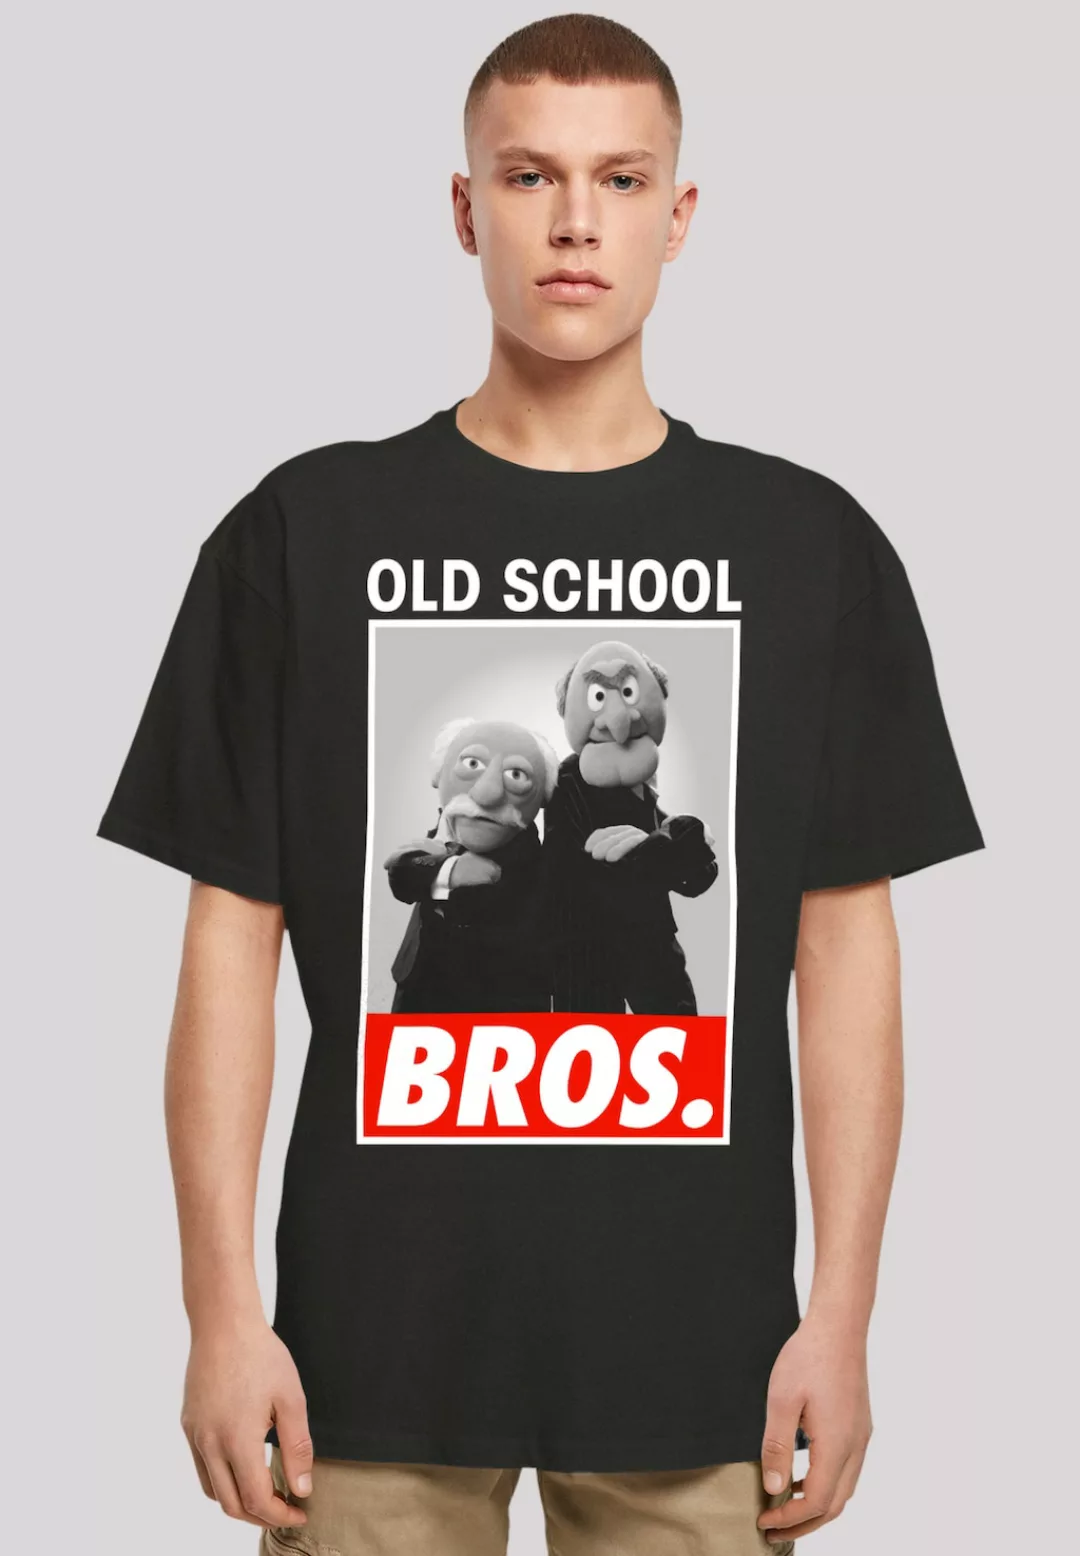 F4NT4STIC T-Shirt "Disney Muppets Old School Bros." günstig online kaufen